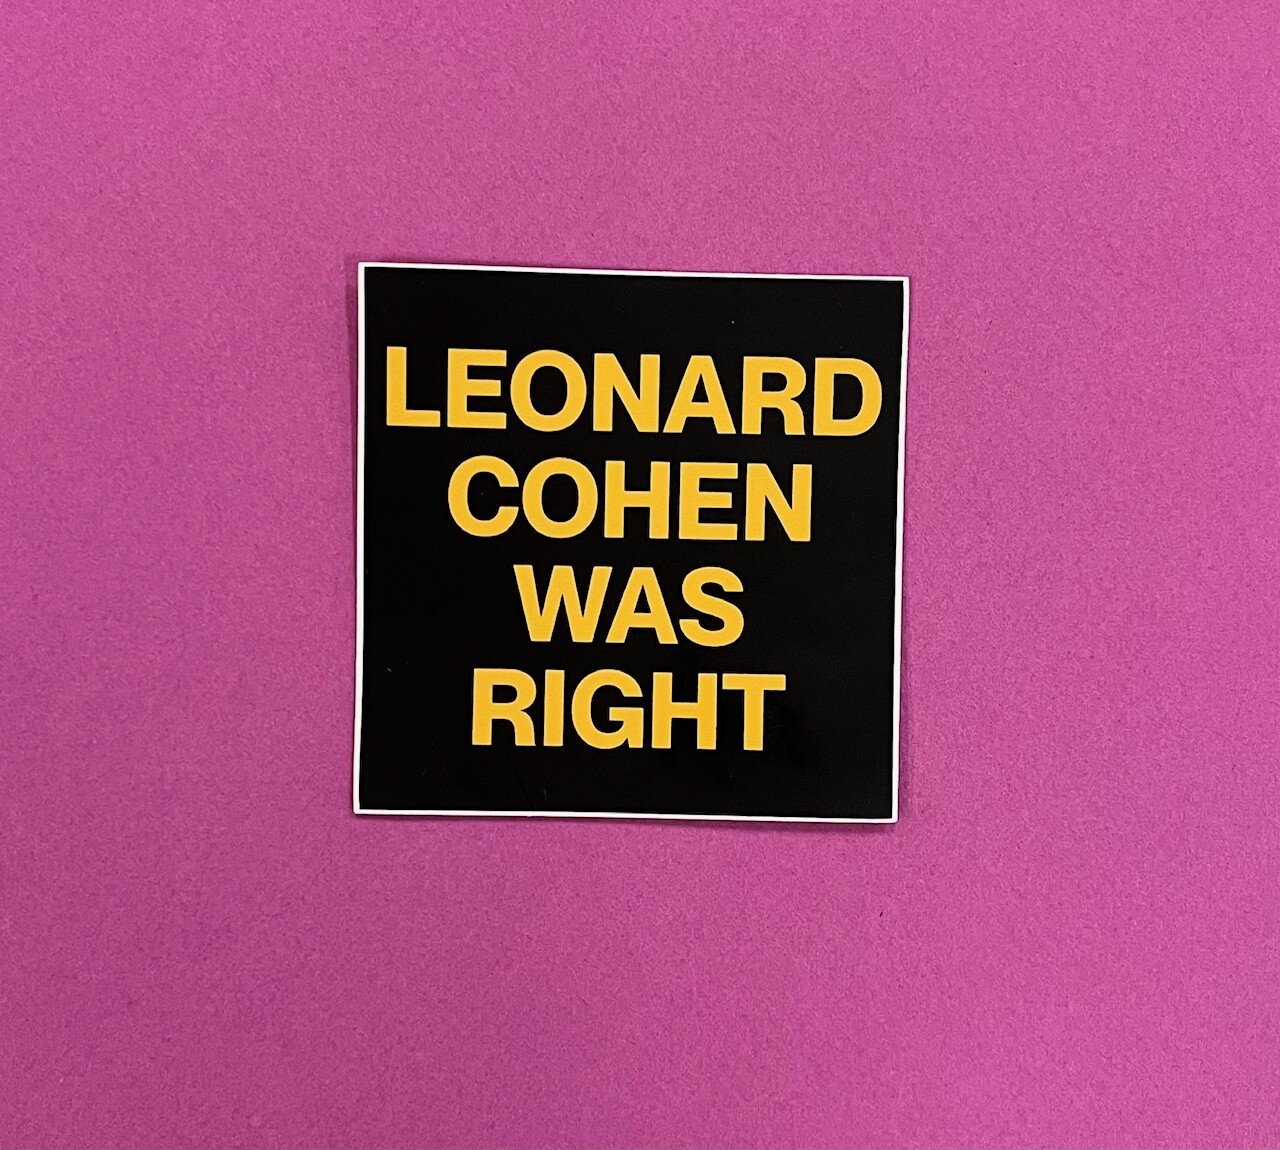 Leonard Cohen Was Right, vinyl sticker by HOMESCHOOLKARATE